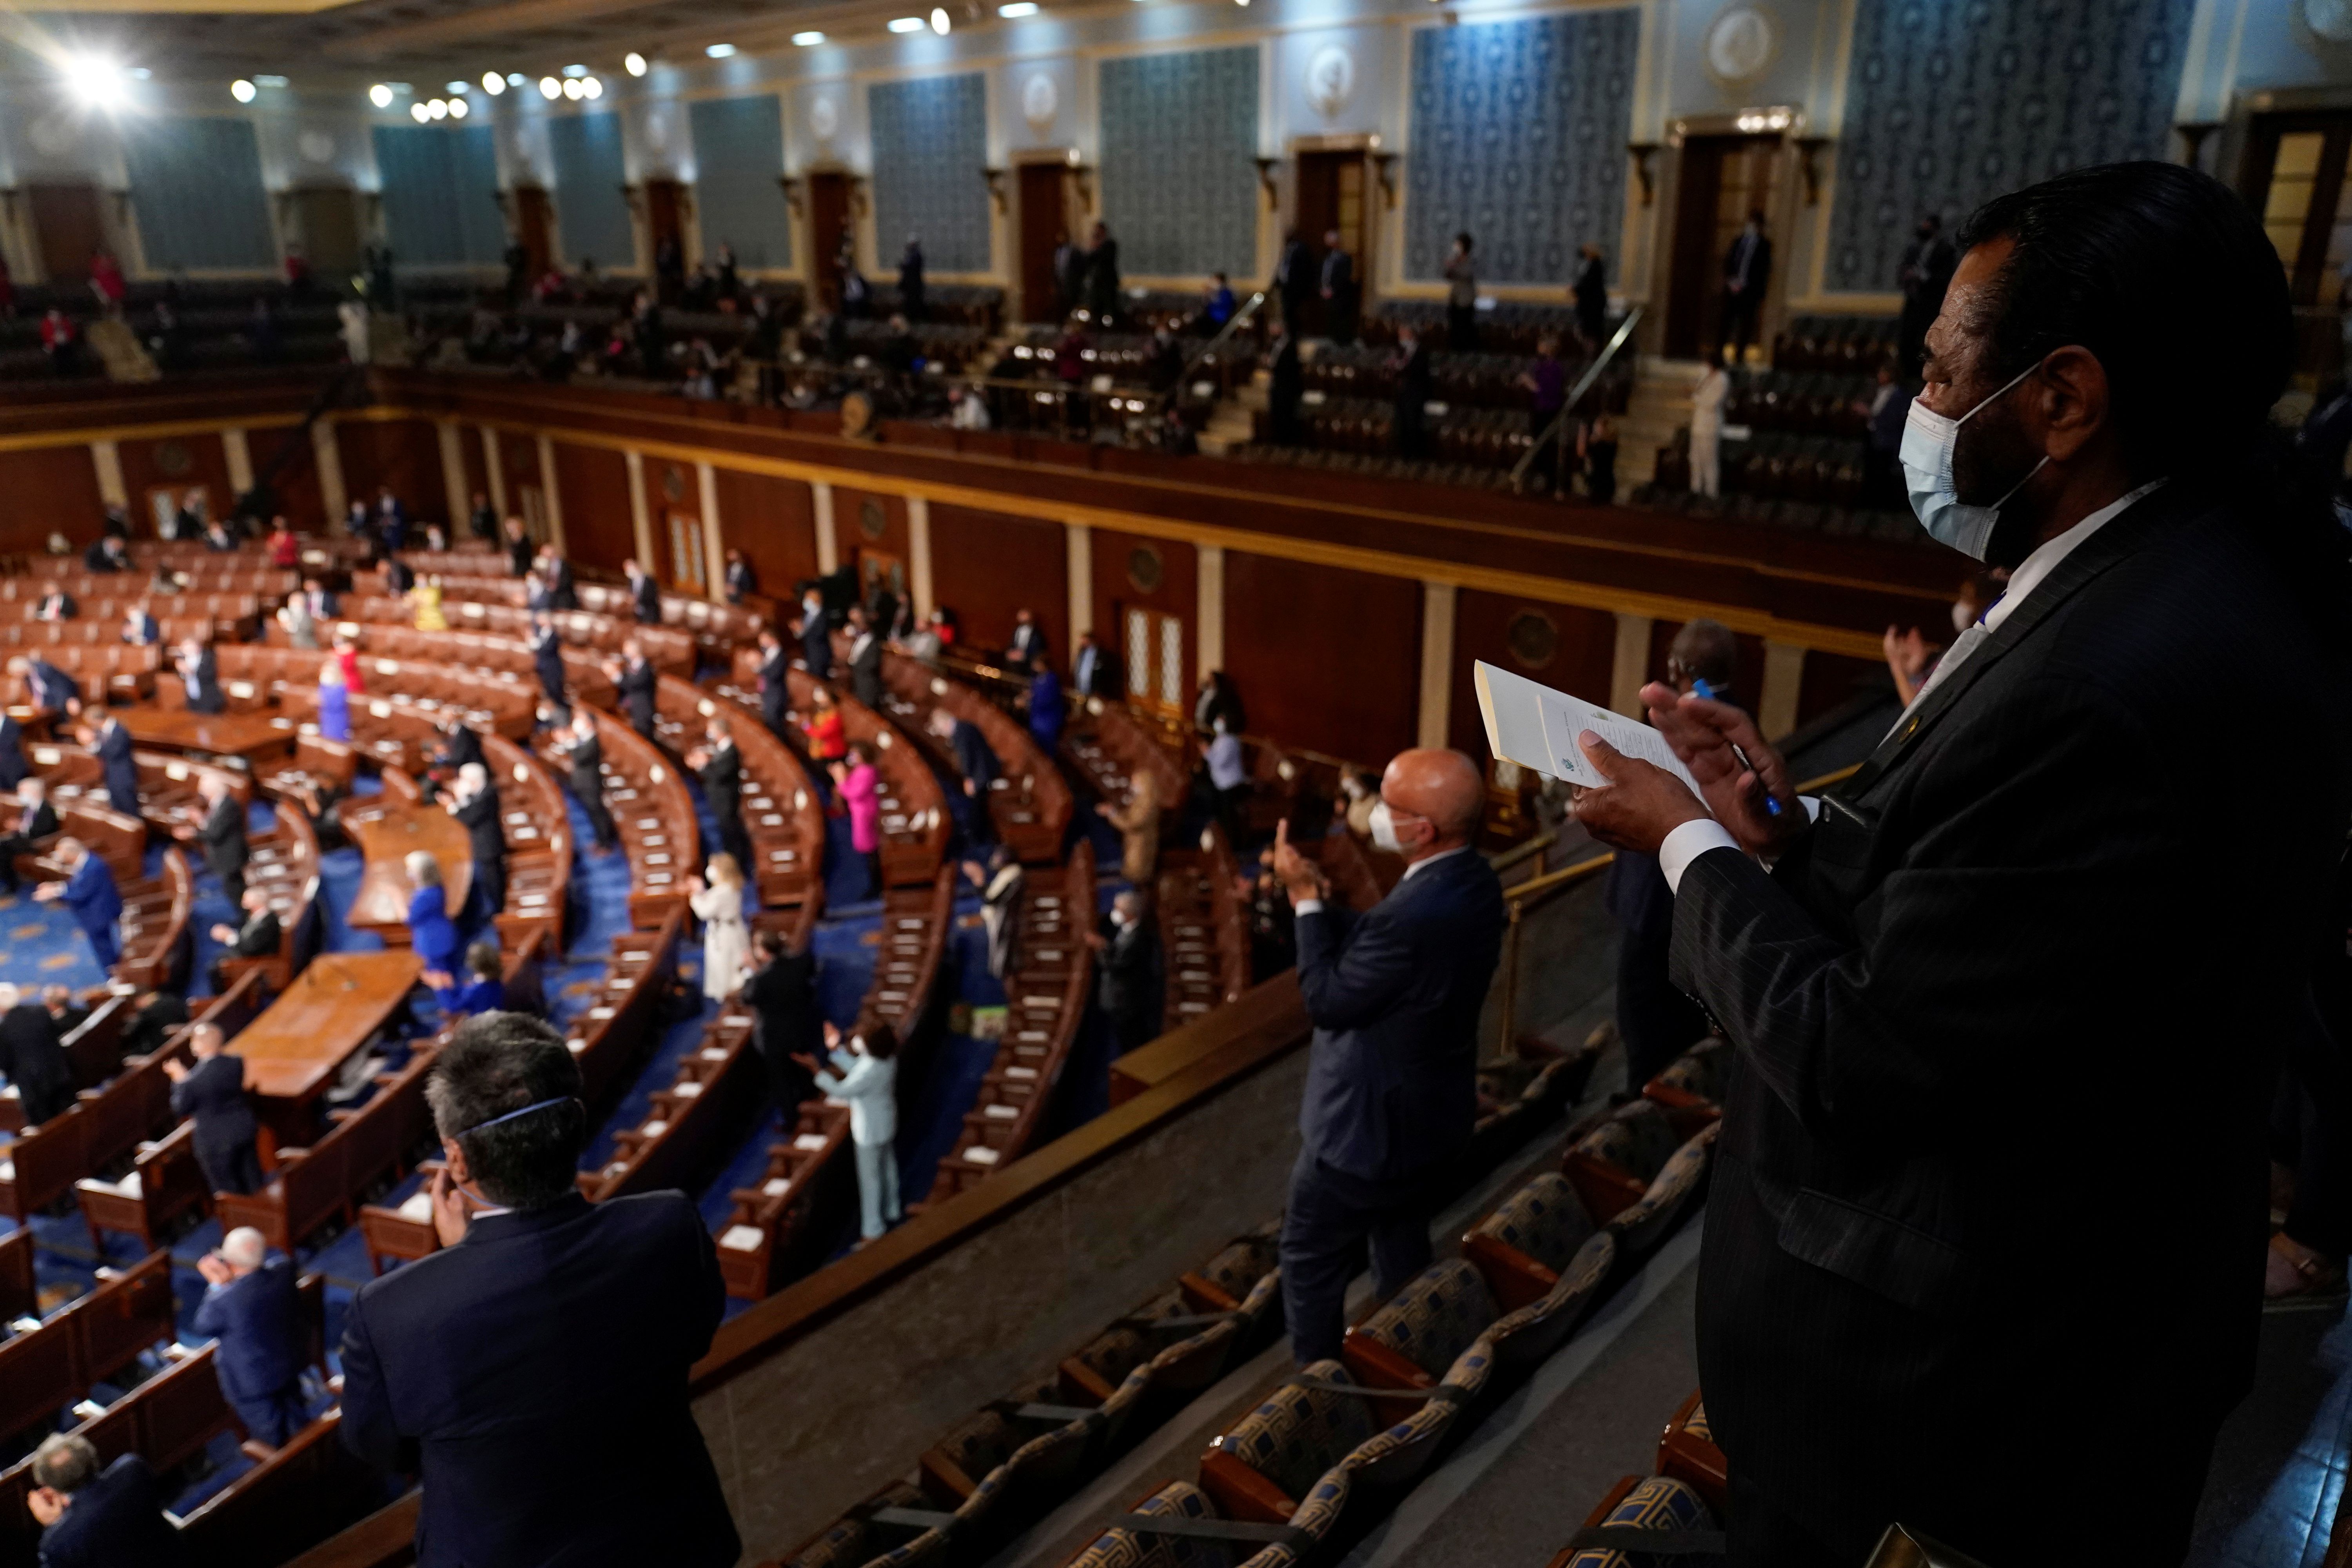 Los miembros del Congreso aplauden mientras el presidente de los Estados Unidos, Joe Biden, habla en una sesión conjunta del Congreso en la Cámara de la Cámara en el Capitolio de los Estados Unidos en Washington. Andrew Harnik/Pool via REUTERS